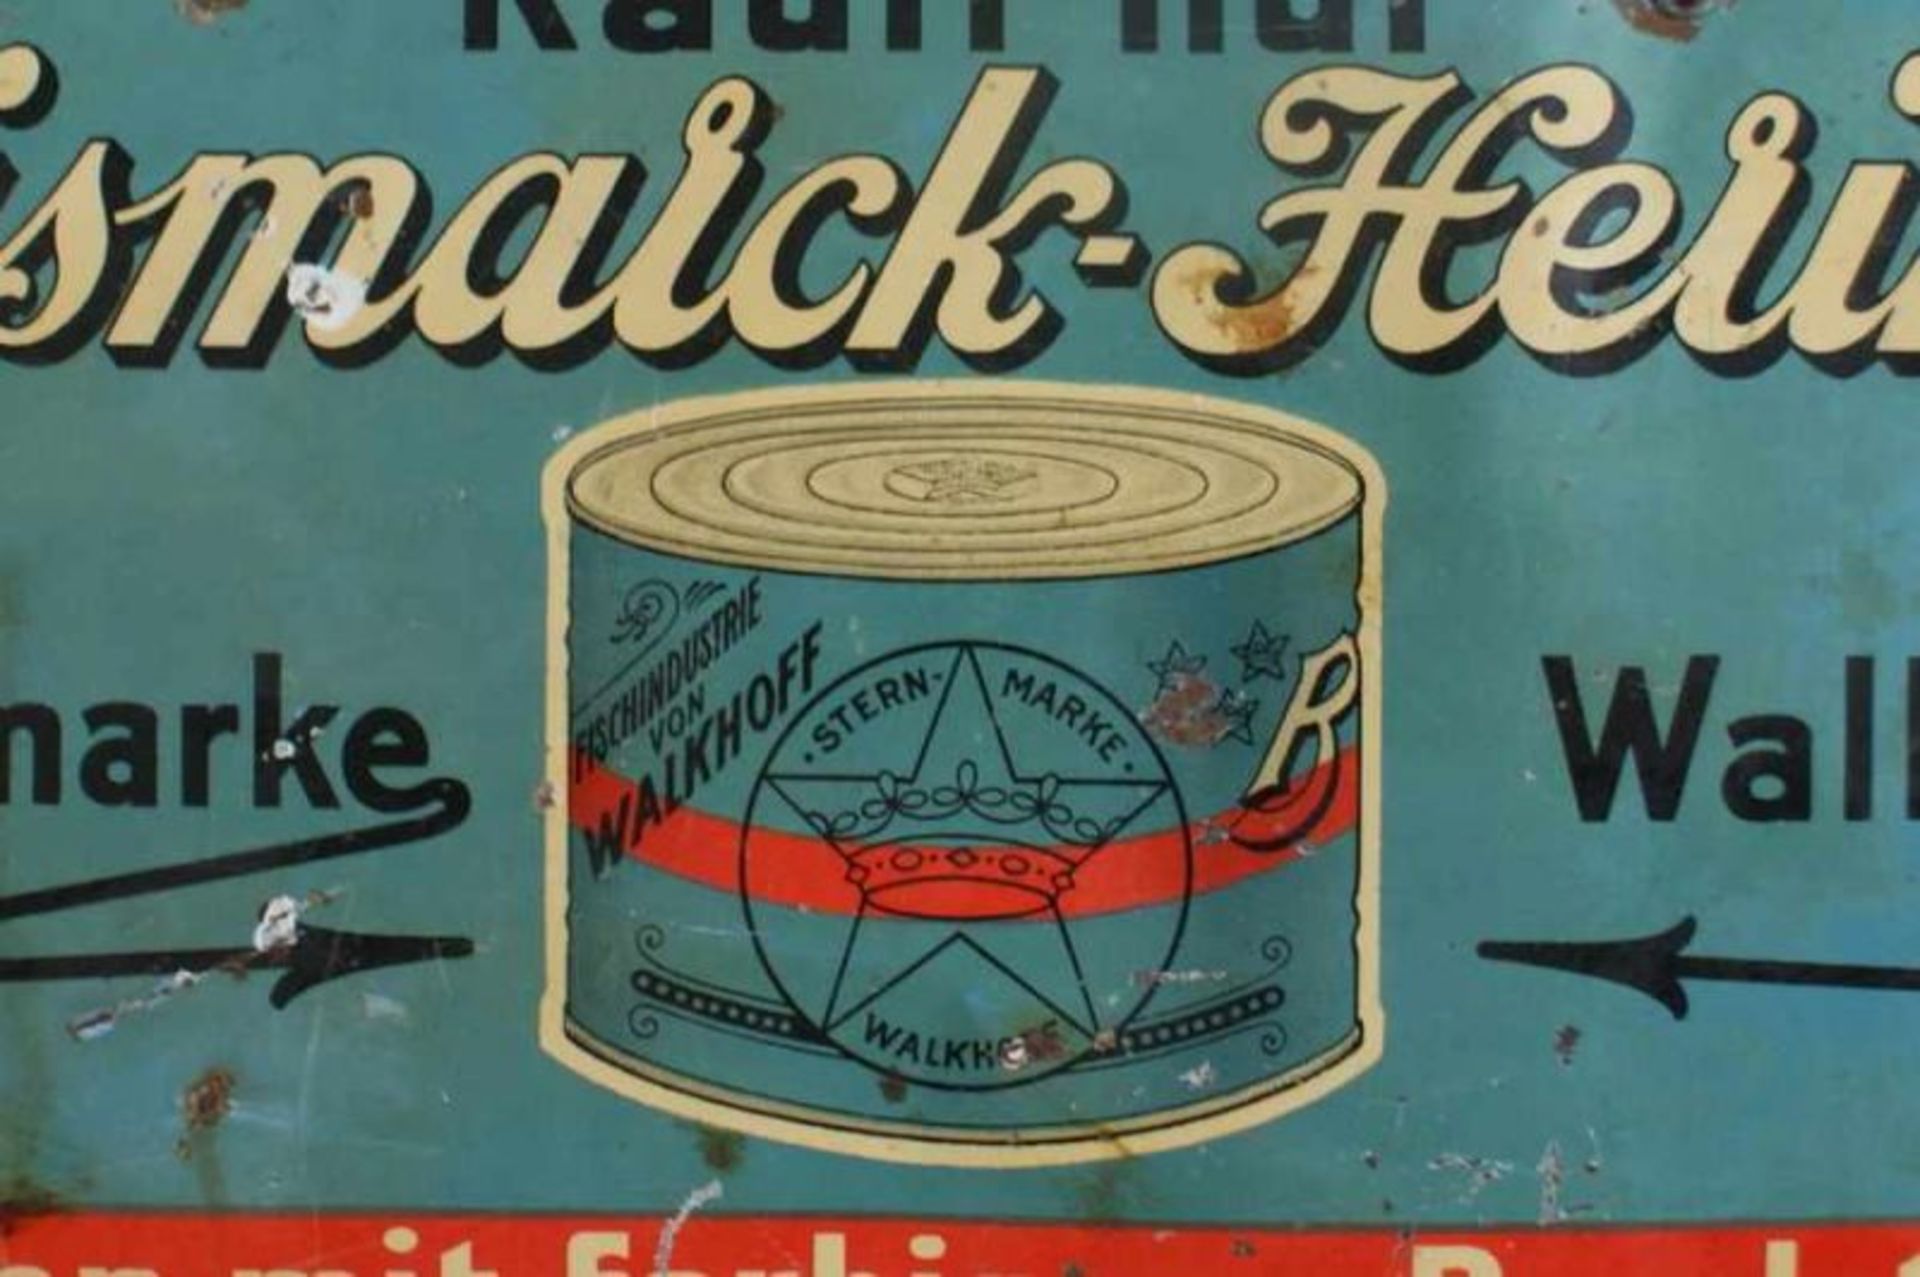 Blechschild / Werbeschild, Bismarck-Heringe, Sternmarke Walkhoff, Alterssupren, 16x33cm 20.17 % - Bild 3 aus 4